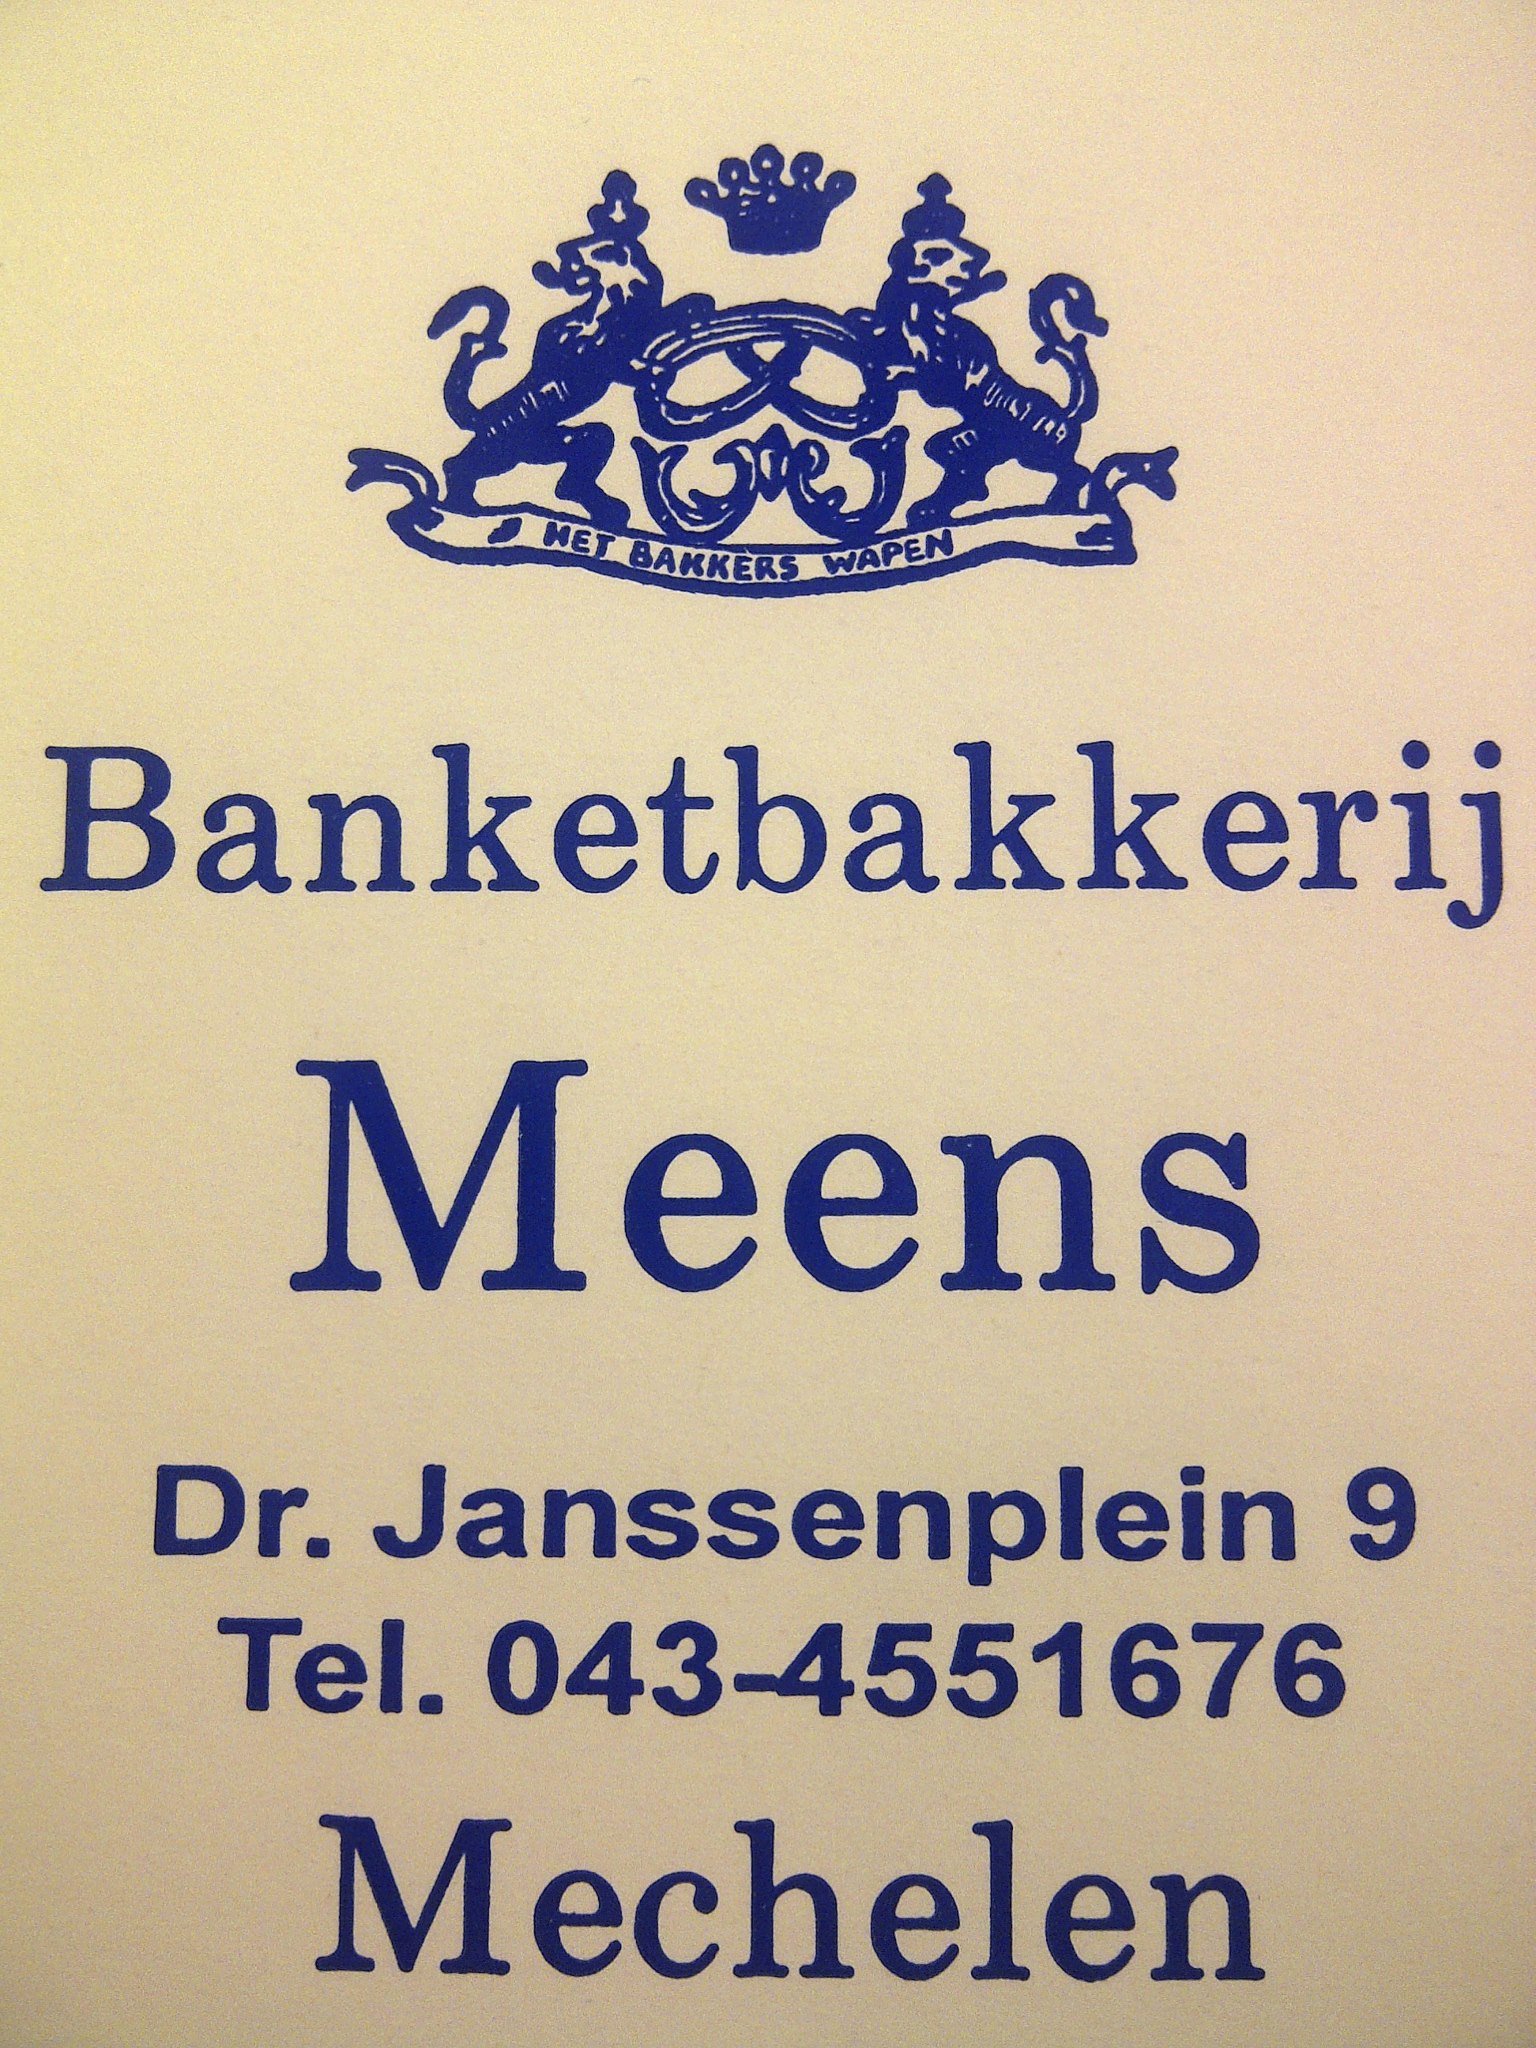 Logo bakkerij Meens Mechelen Limburg